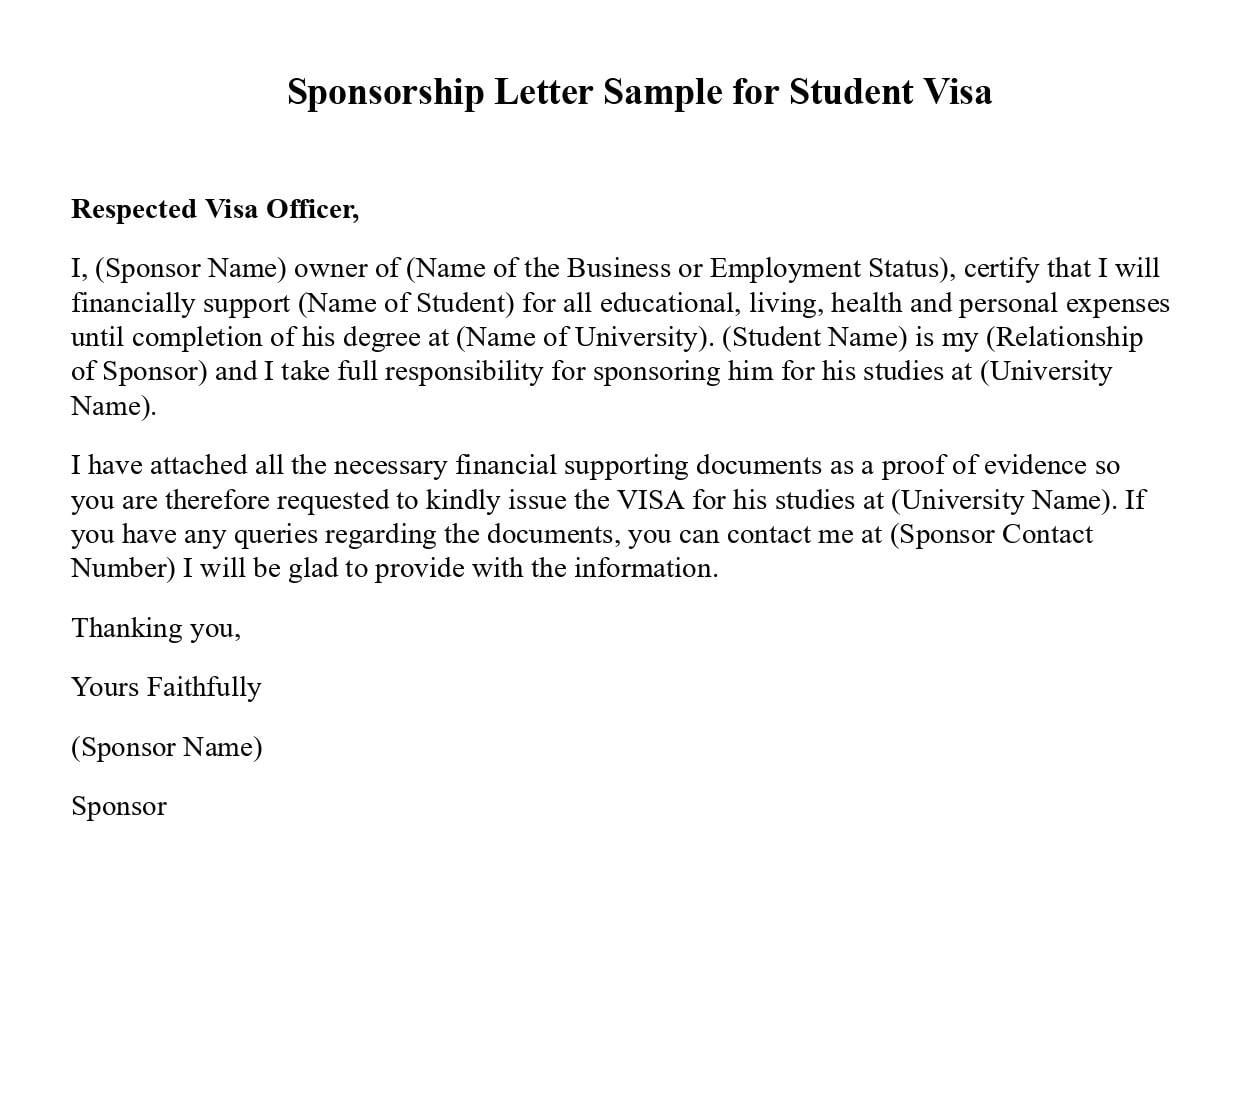 Sponsorship Letter Sample for Student Visa 2022